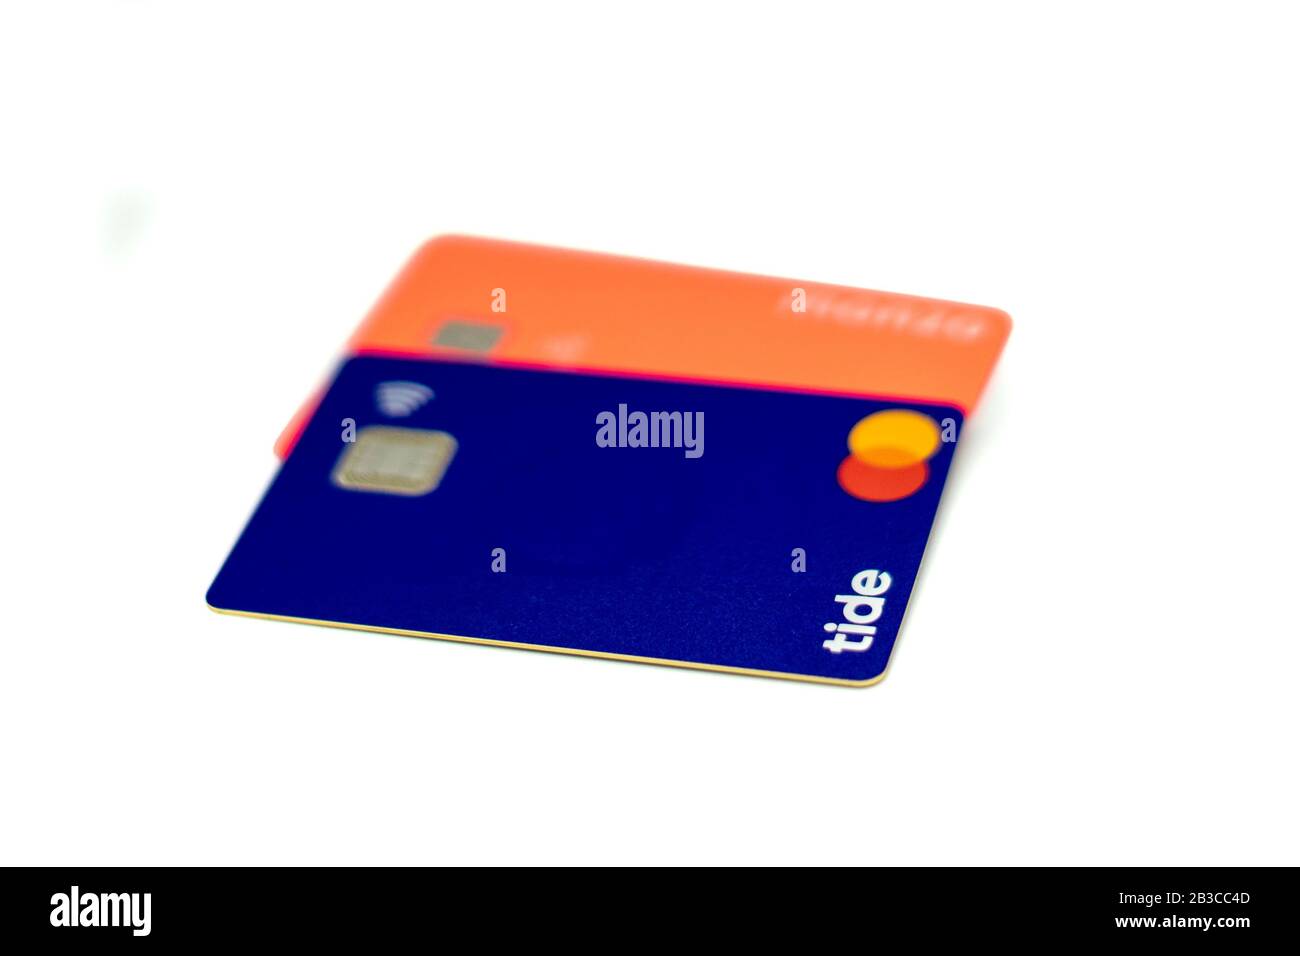 Dos tarjetas de débito de bancos en línea para el banco Tide y una para el banco Monzo Foto de stock